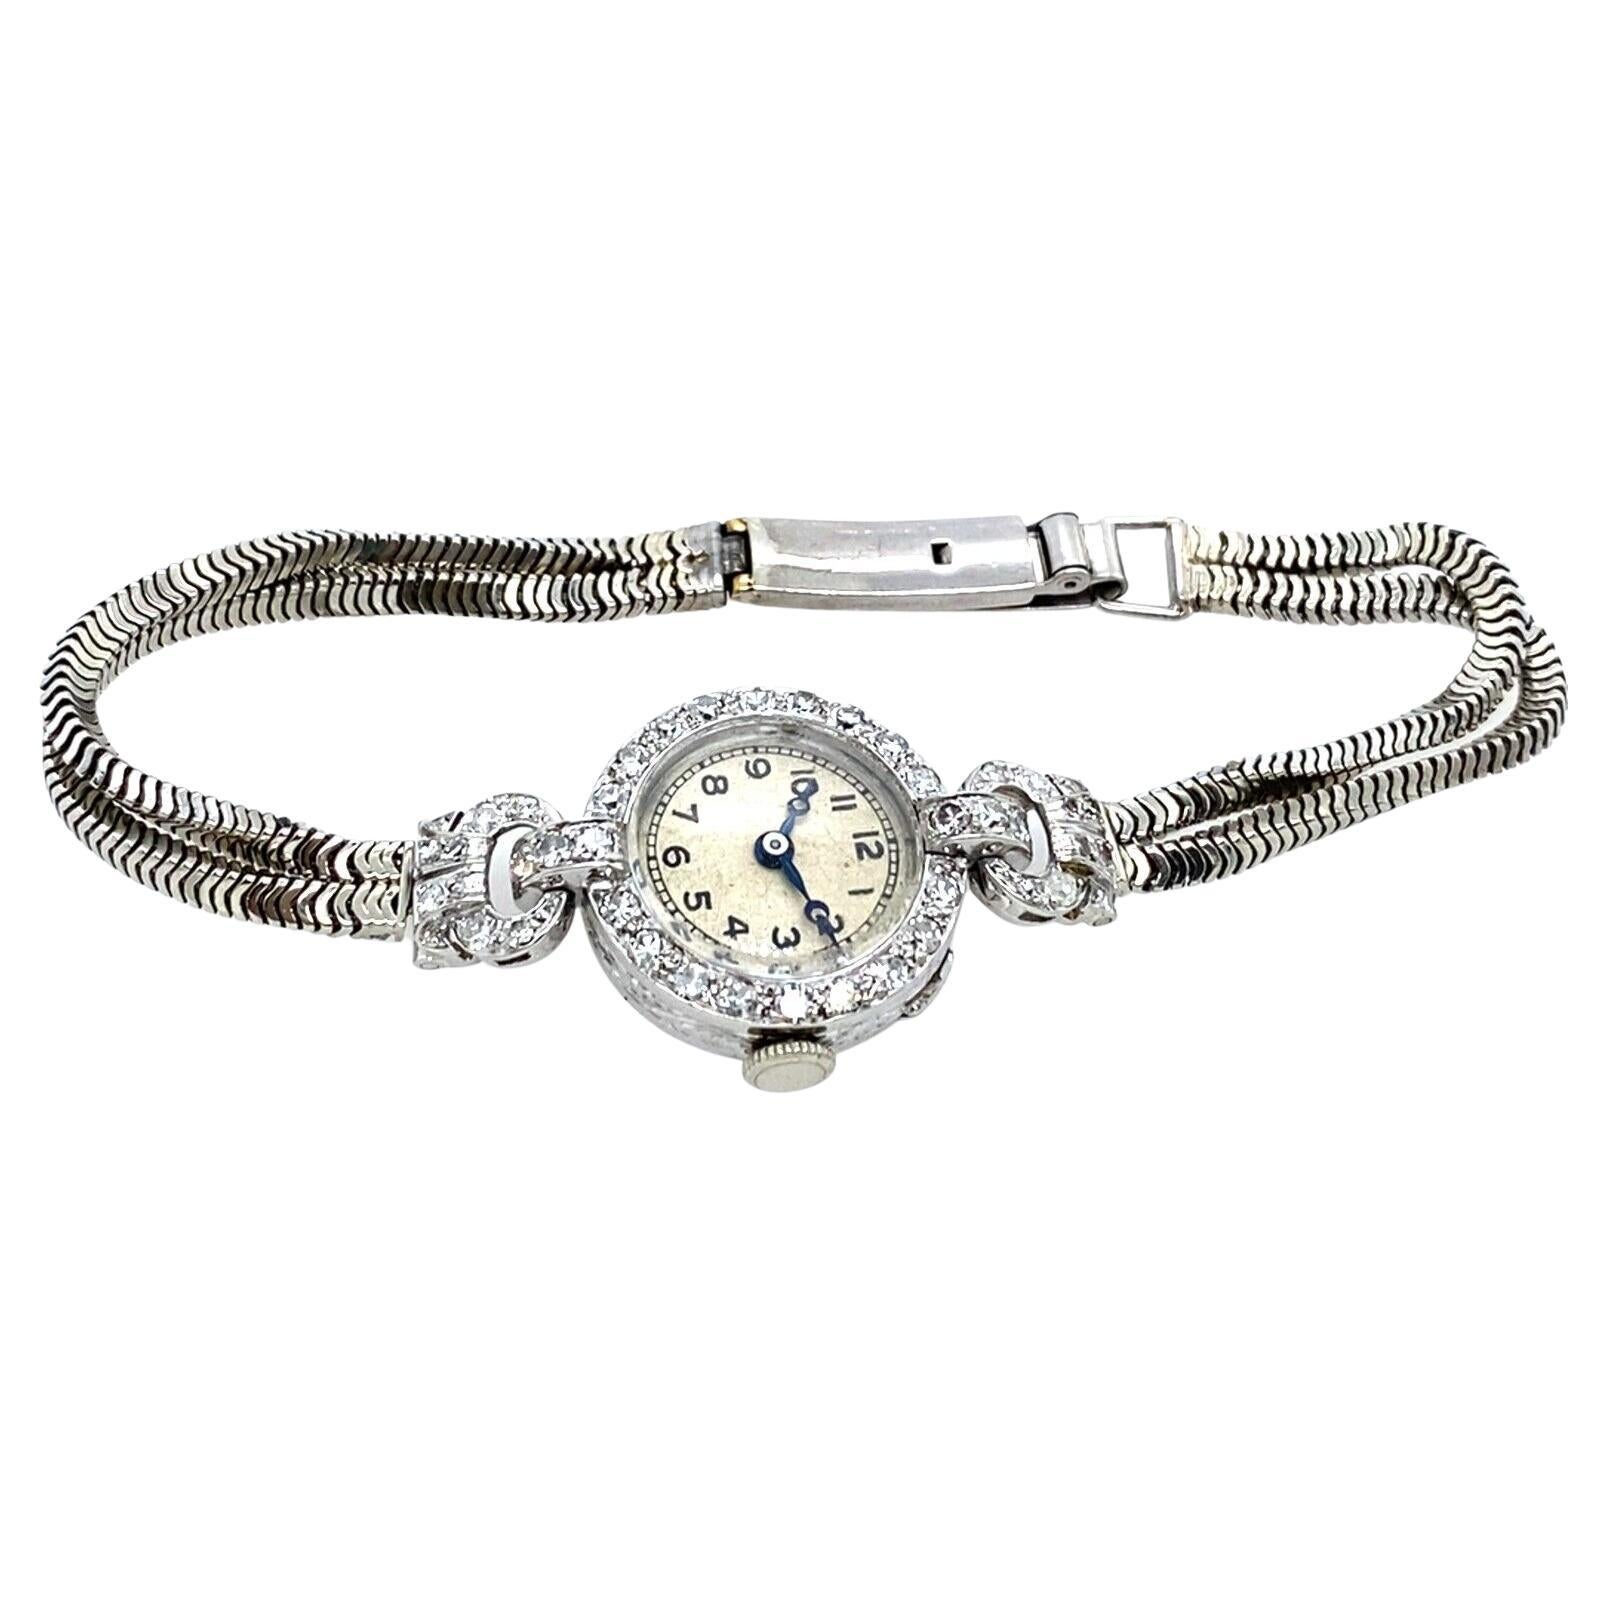 Vertex-Supreme Uhr in Platingehäuse & 9ct Weißgold 2 Reihen Armband & Diamanten